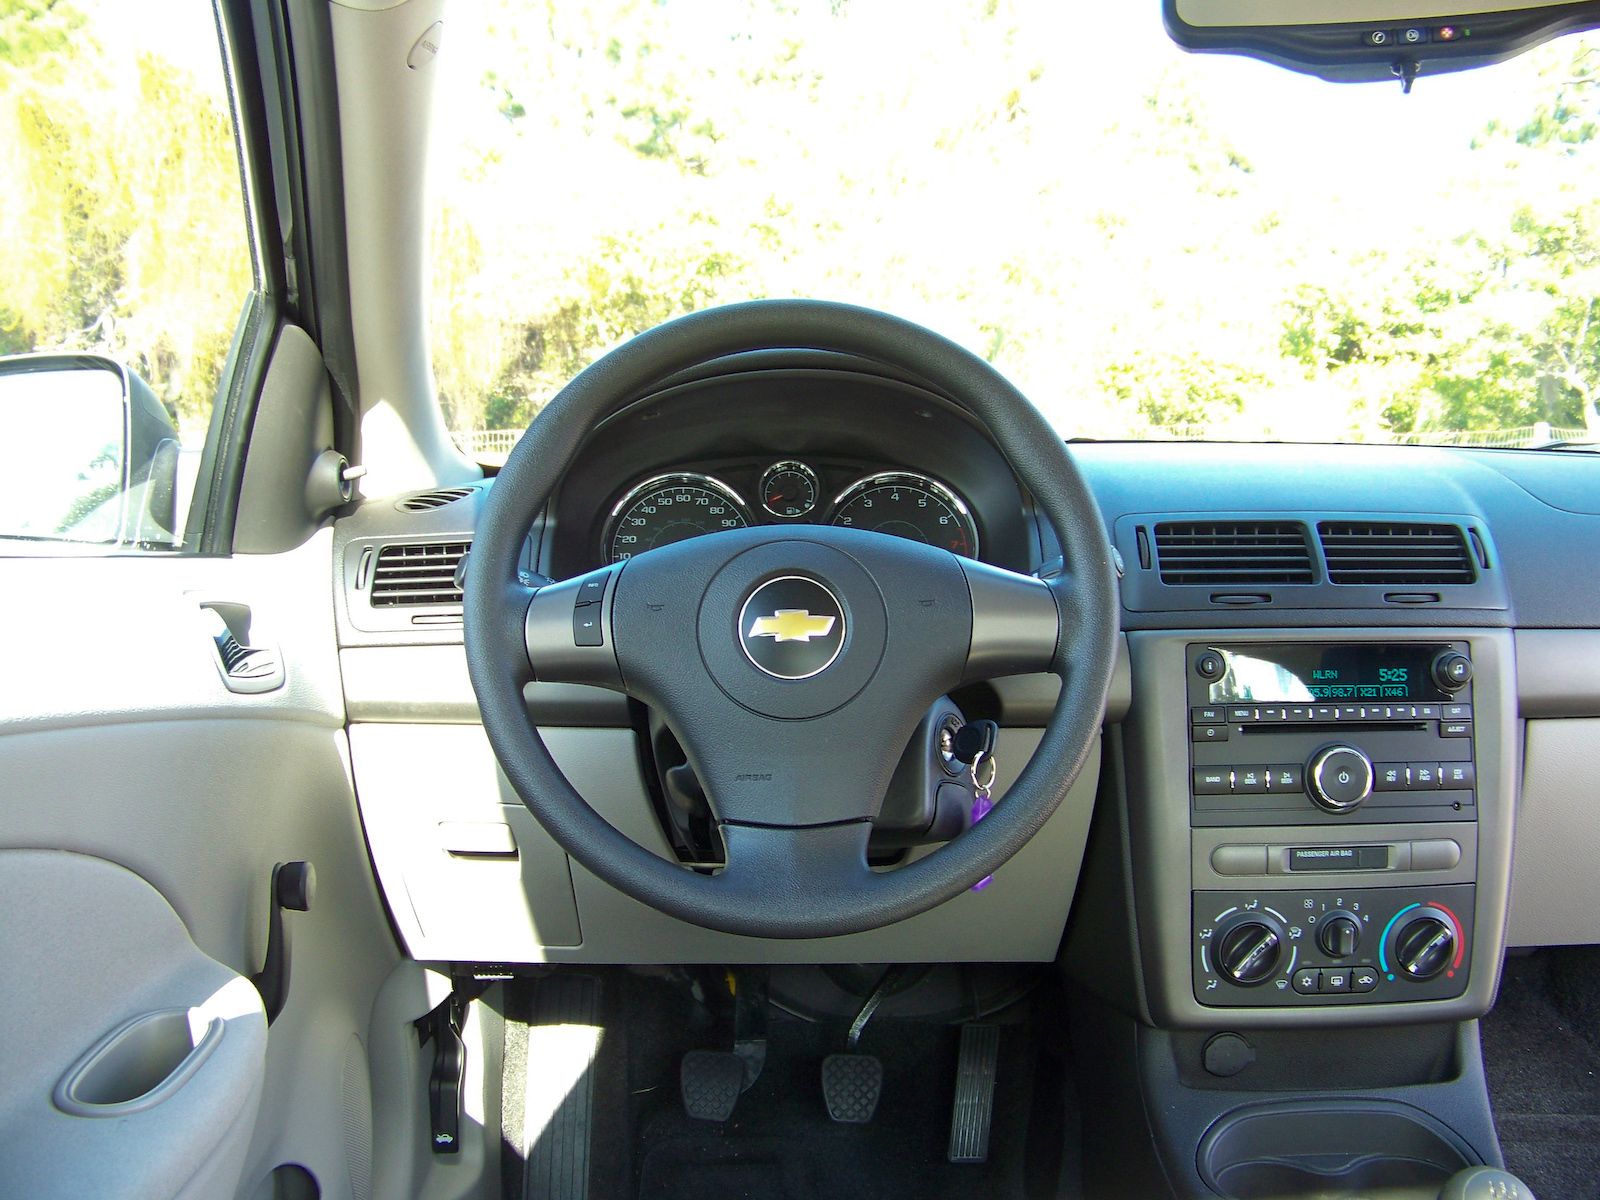 2009 Chevrolet Cobalt XFE